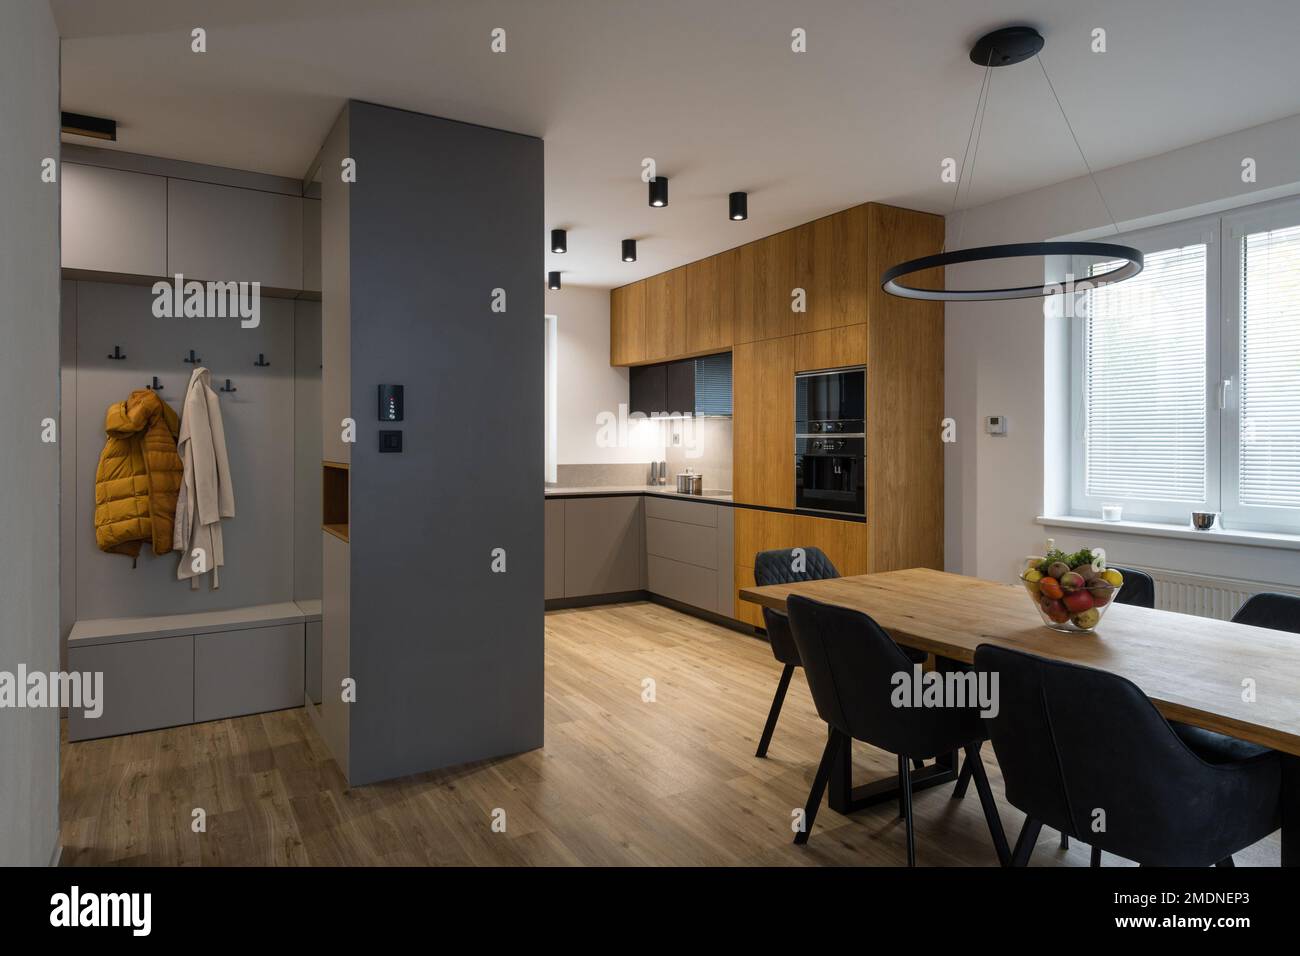 Muebles de cocina en blanco fotografías e imágenes de alta resolución -  Página 5 - Alamy